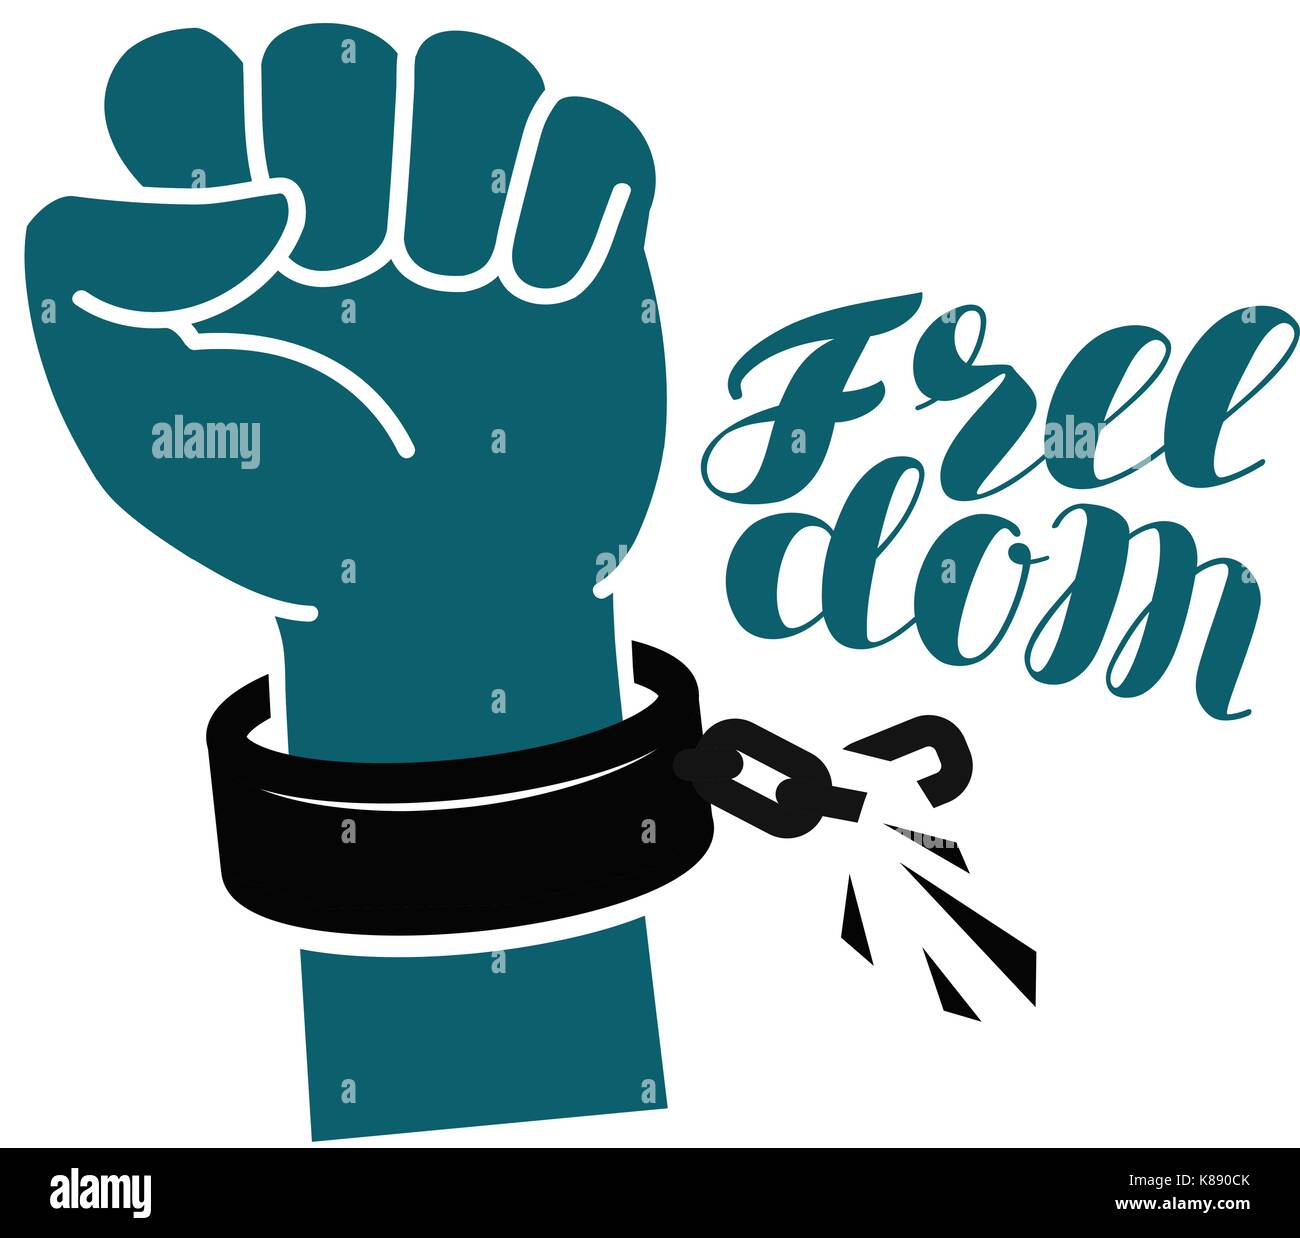 Libertad, símbolo libre. mano levantada del puño, rompe grilletes o cadena. Rotulación ilustración vectorial Ilustración del Vector